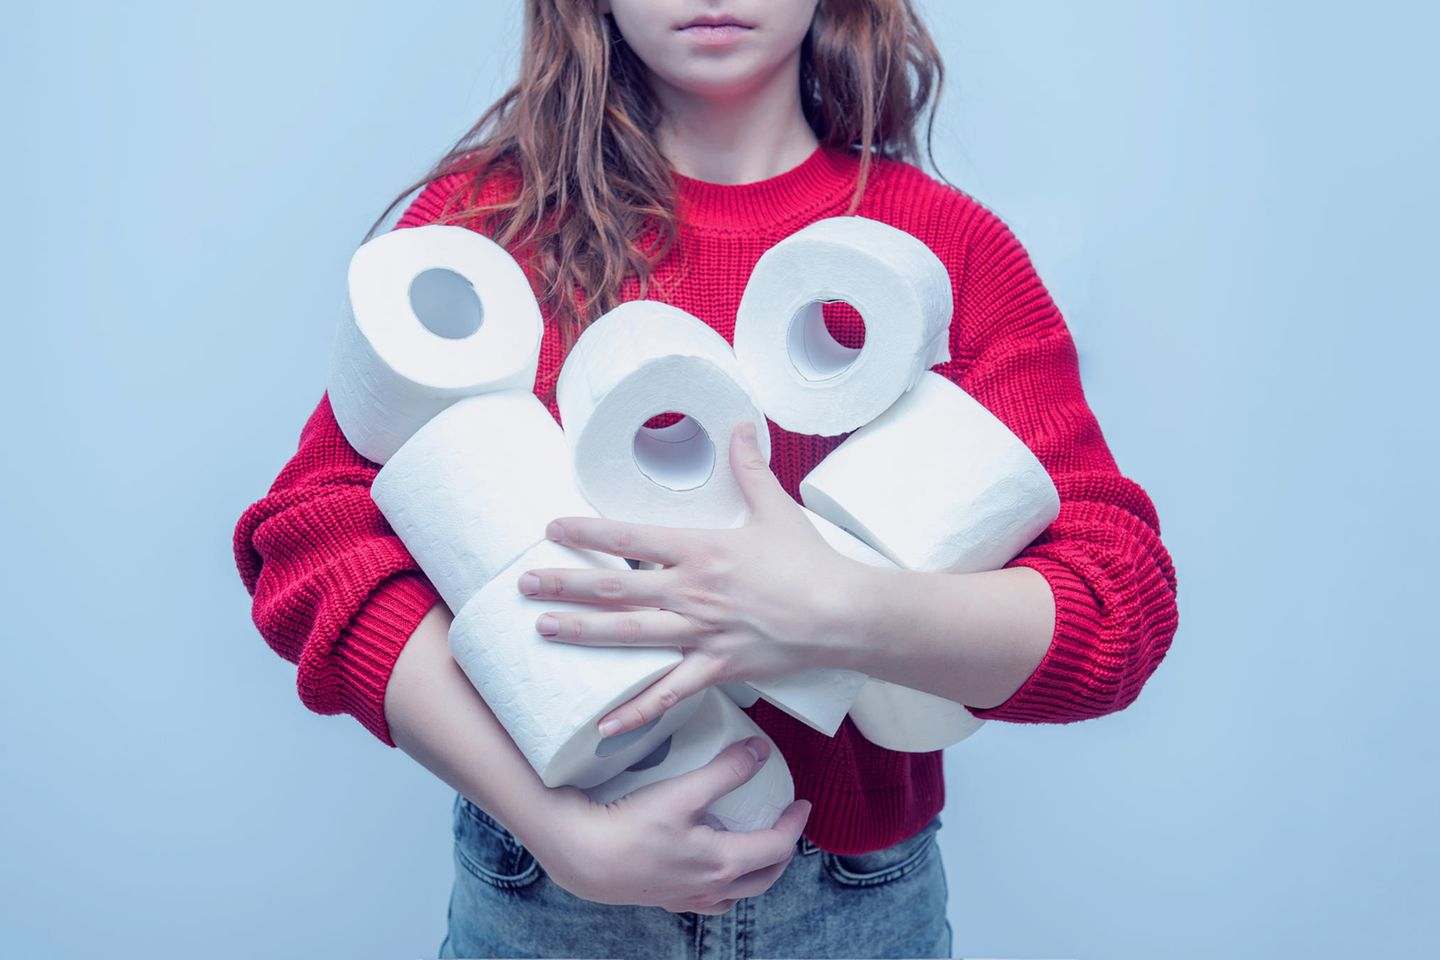 Toilettenpapier: Ein scheinbar wertvolles Gut in der Coronakrise. (Symbolbild)